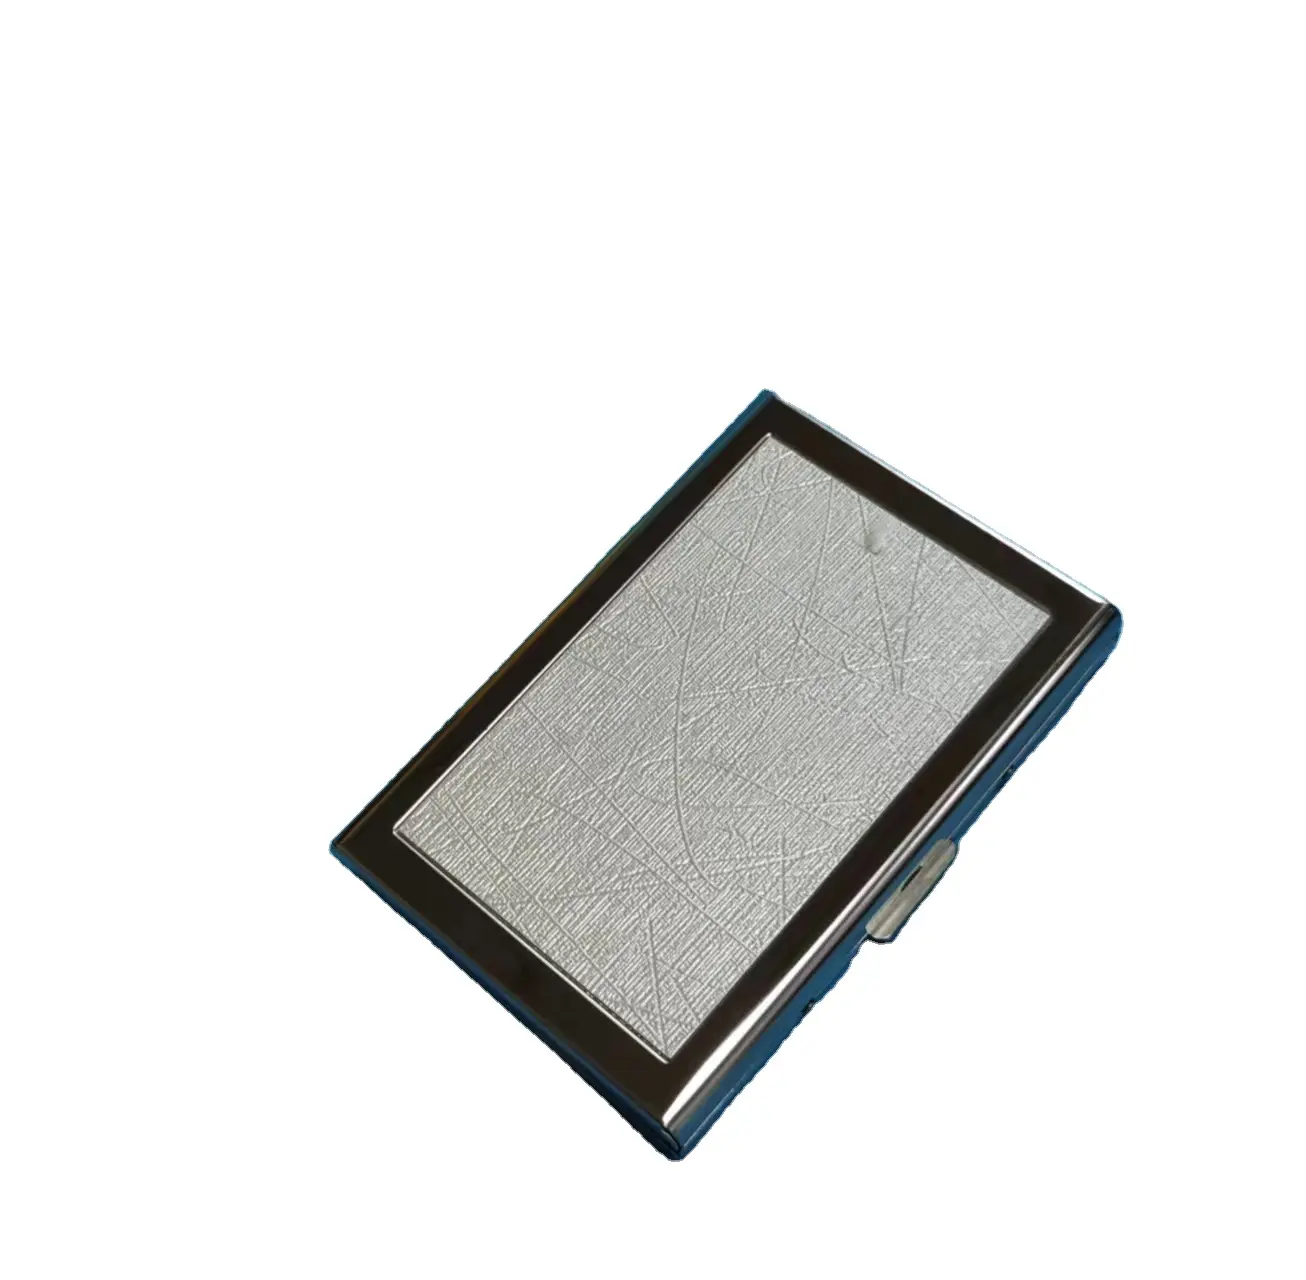 중국 전문 제조업체의 스테인레스 스틸 카드 홀더 RFID 차단 신용 카드 홀더 가죽 지갑